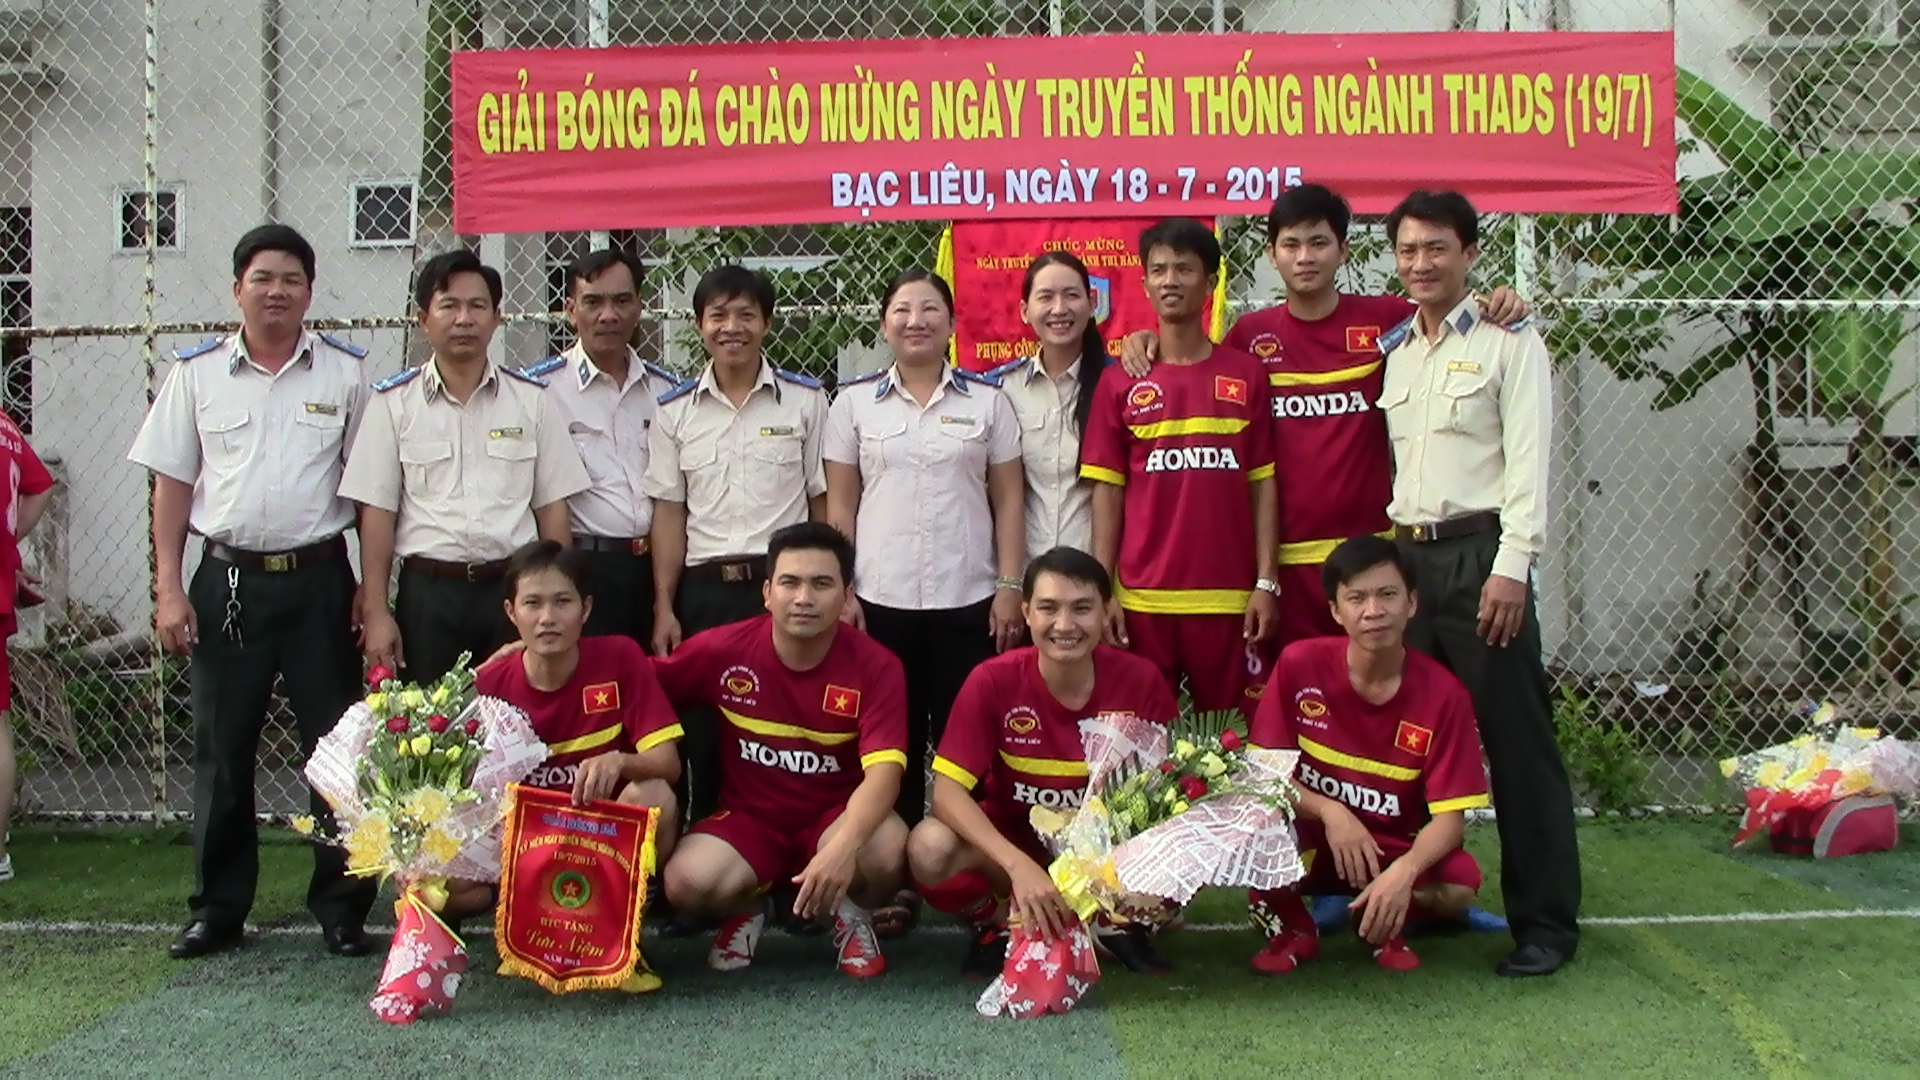 Chi cục Thi hành án dân sự thành phố Bạc Liêu tổ chức Hội thao chào mừng ngày 